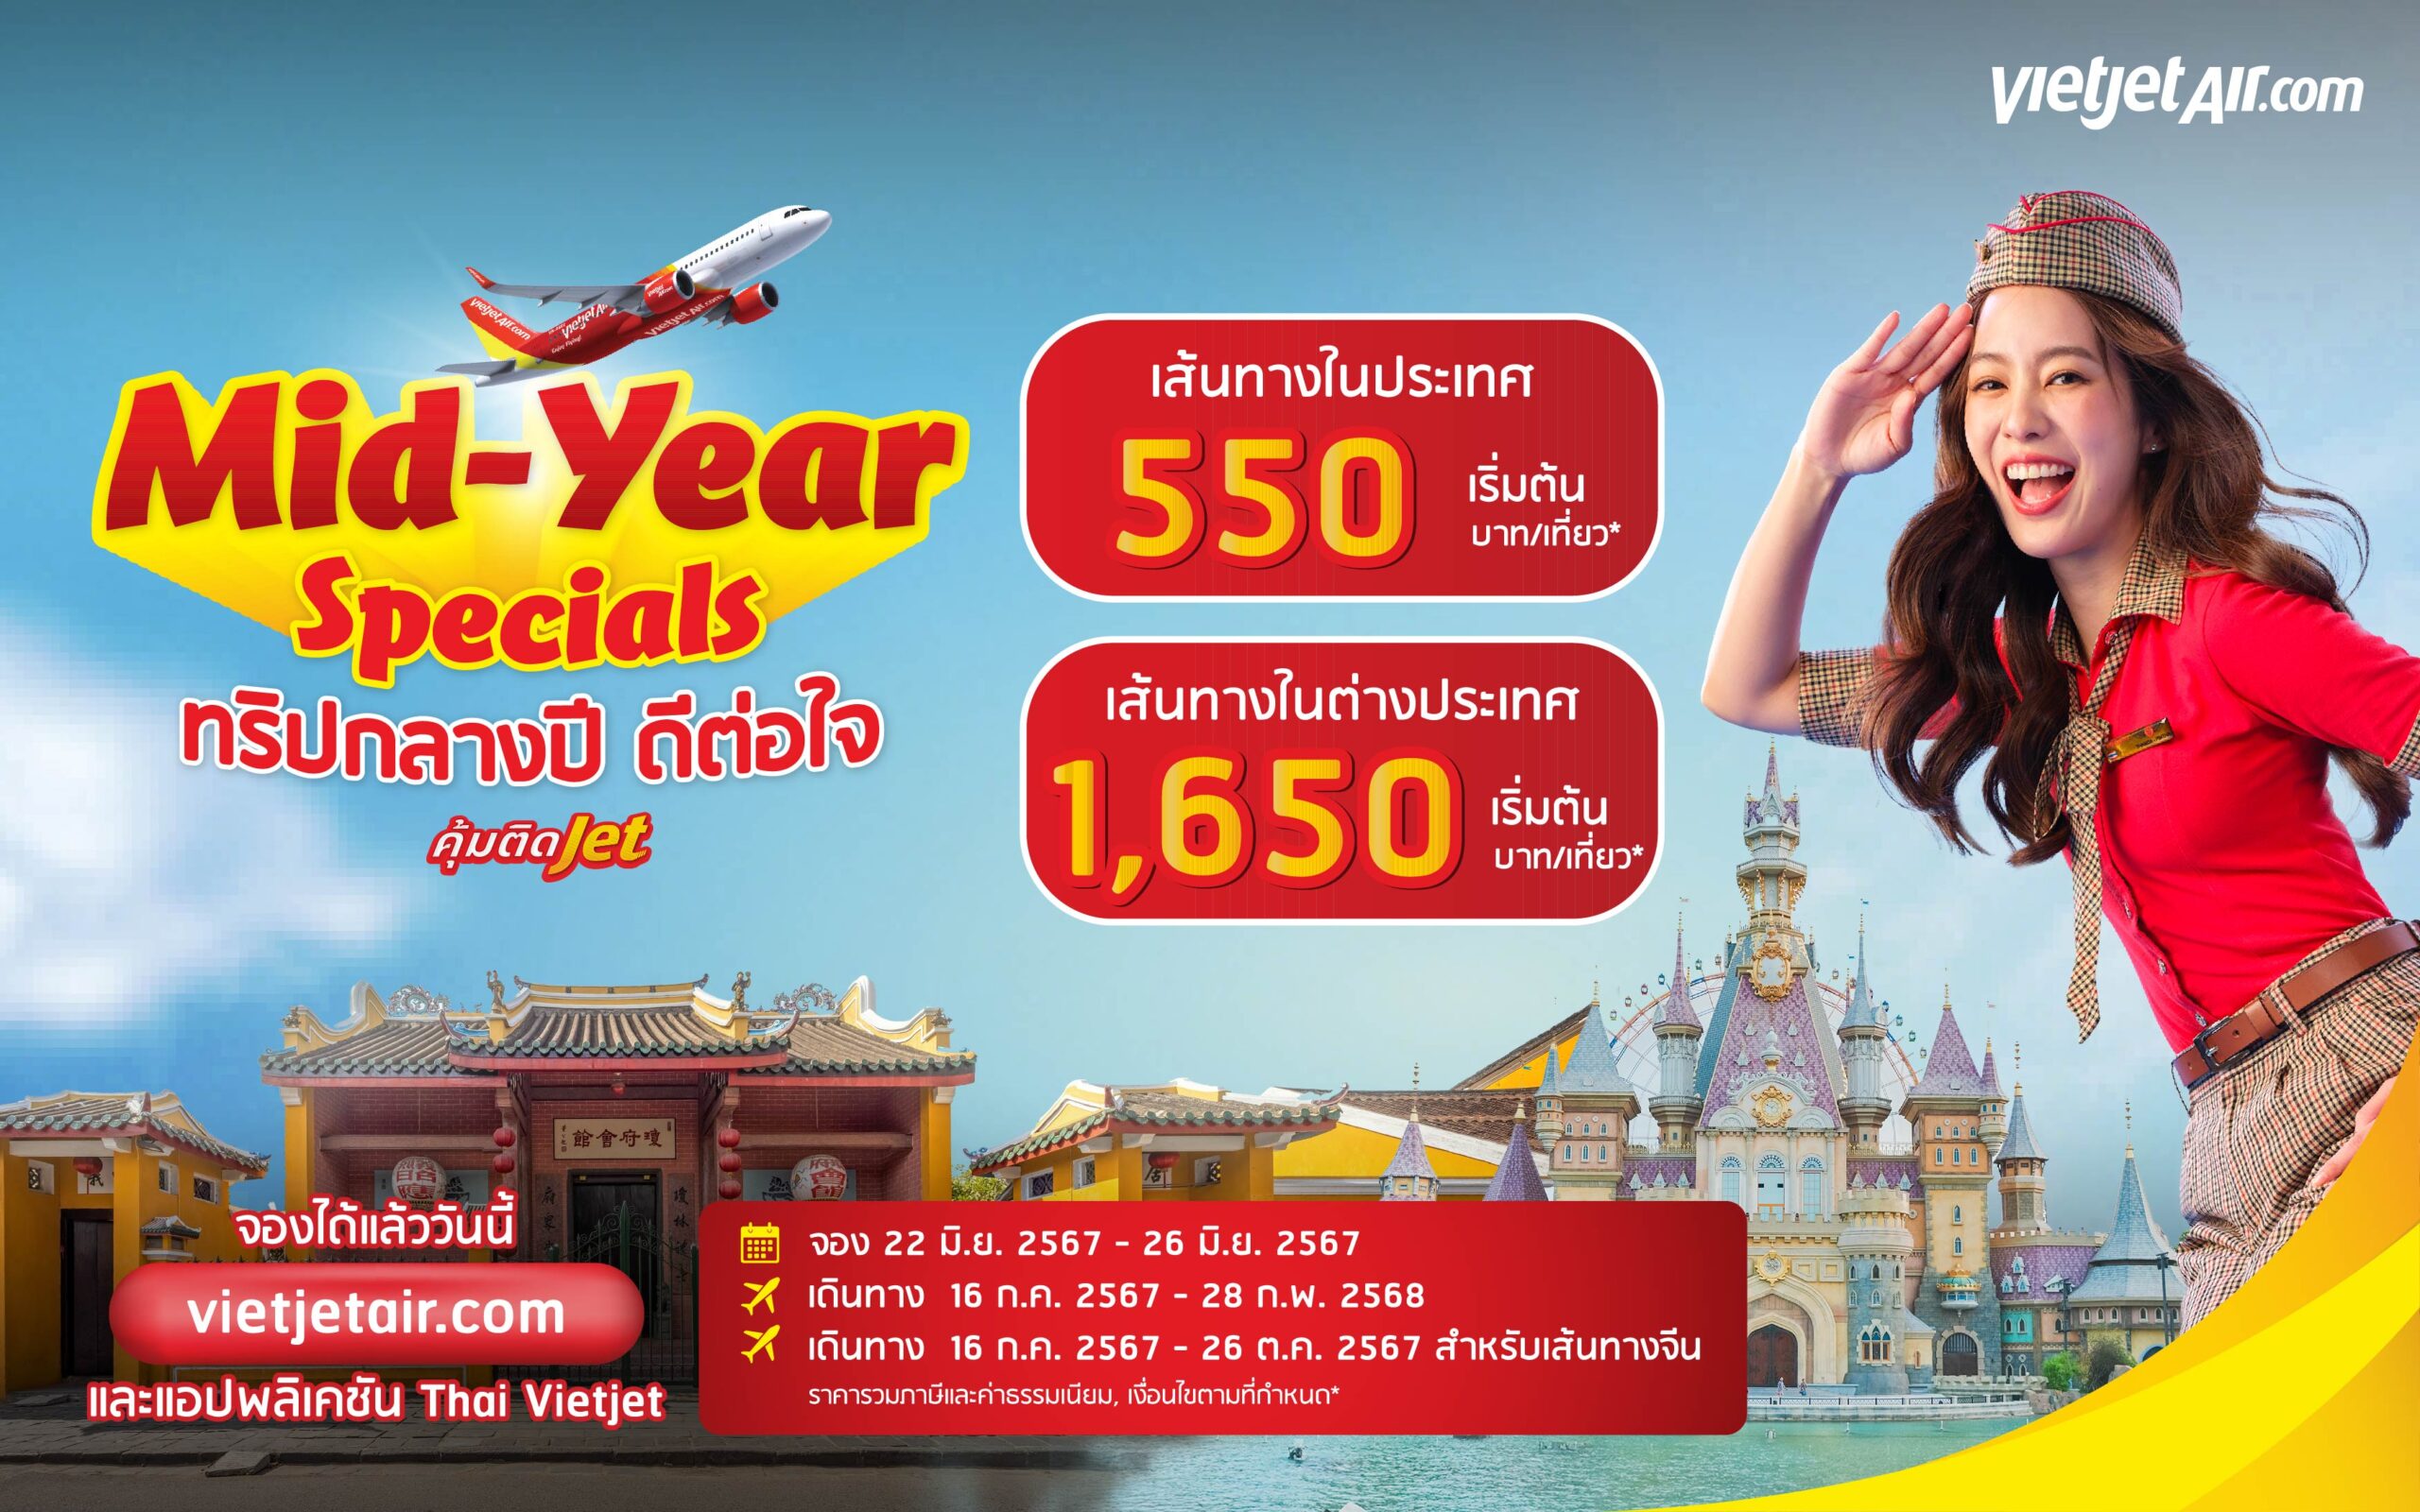 เวียตเจ็ทไทยแลนด์จัดโปรฯ ‘ทริปกลางปี ดีต่อใจ’ ตั๋วเริ่มต้น 550 บาท